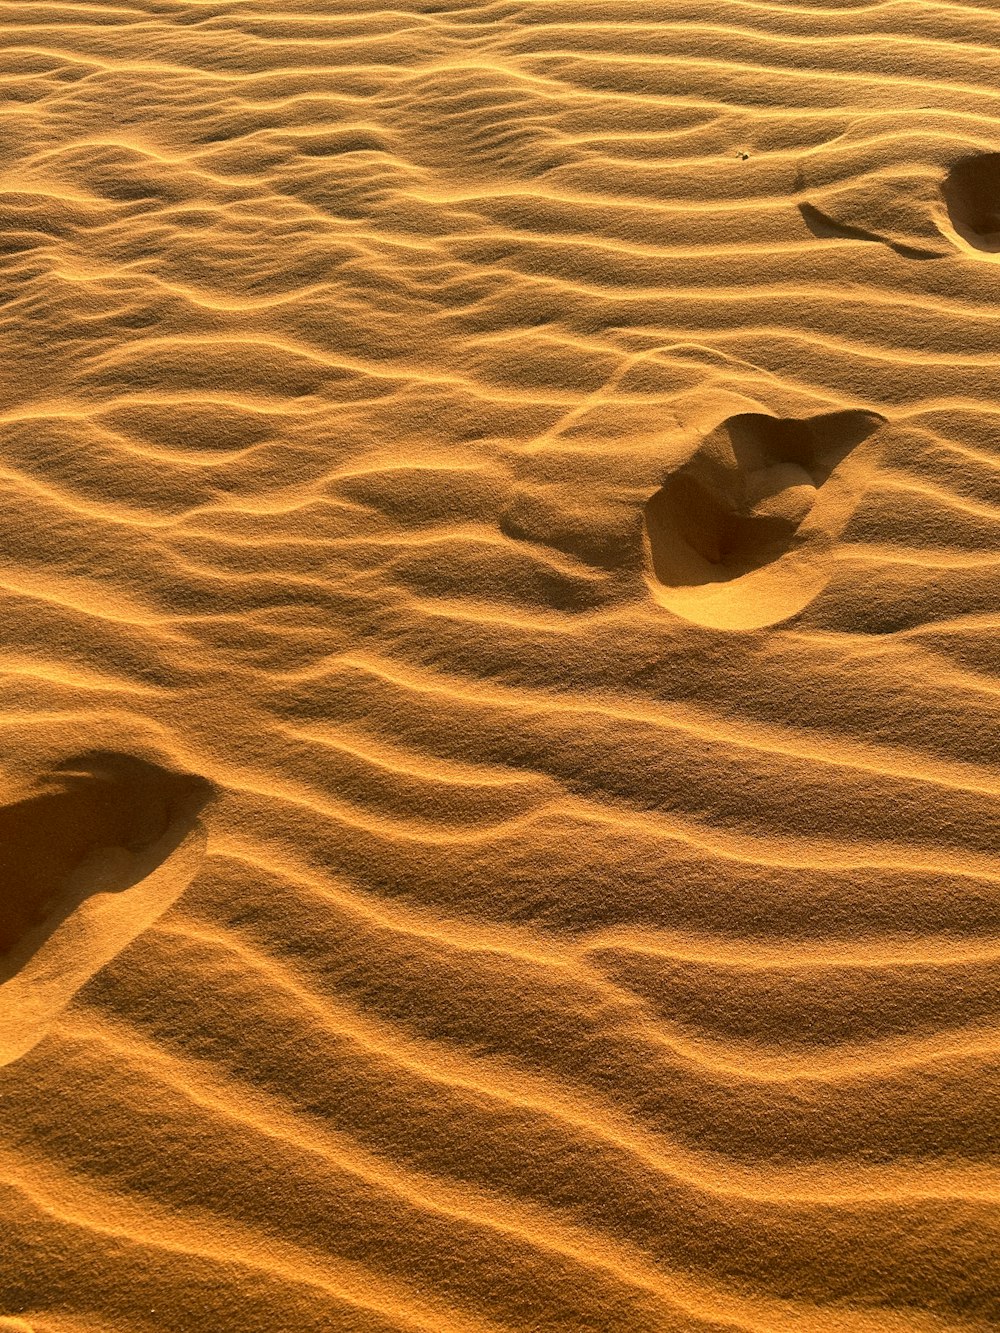 砂漠の砂に浮かぶ2つの足跡